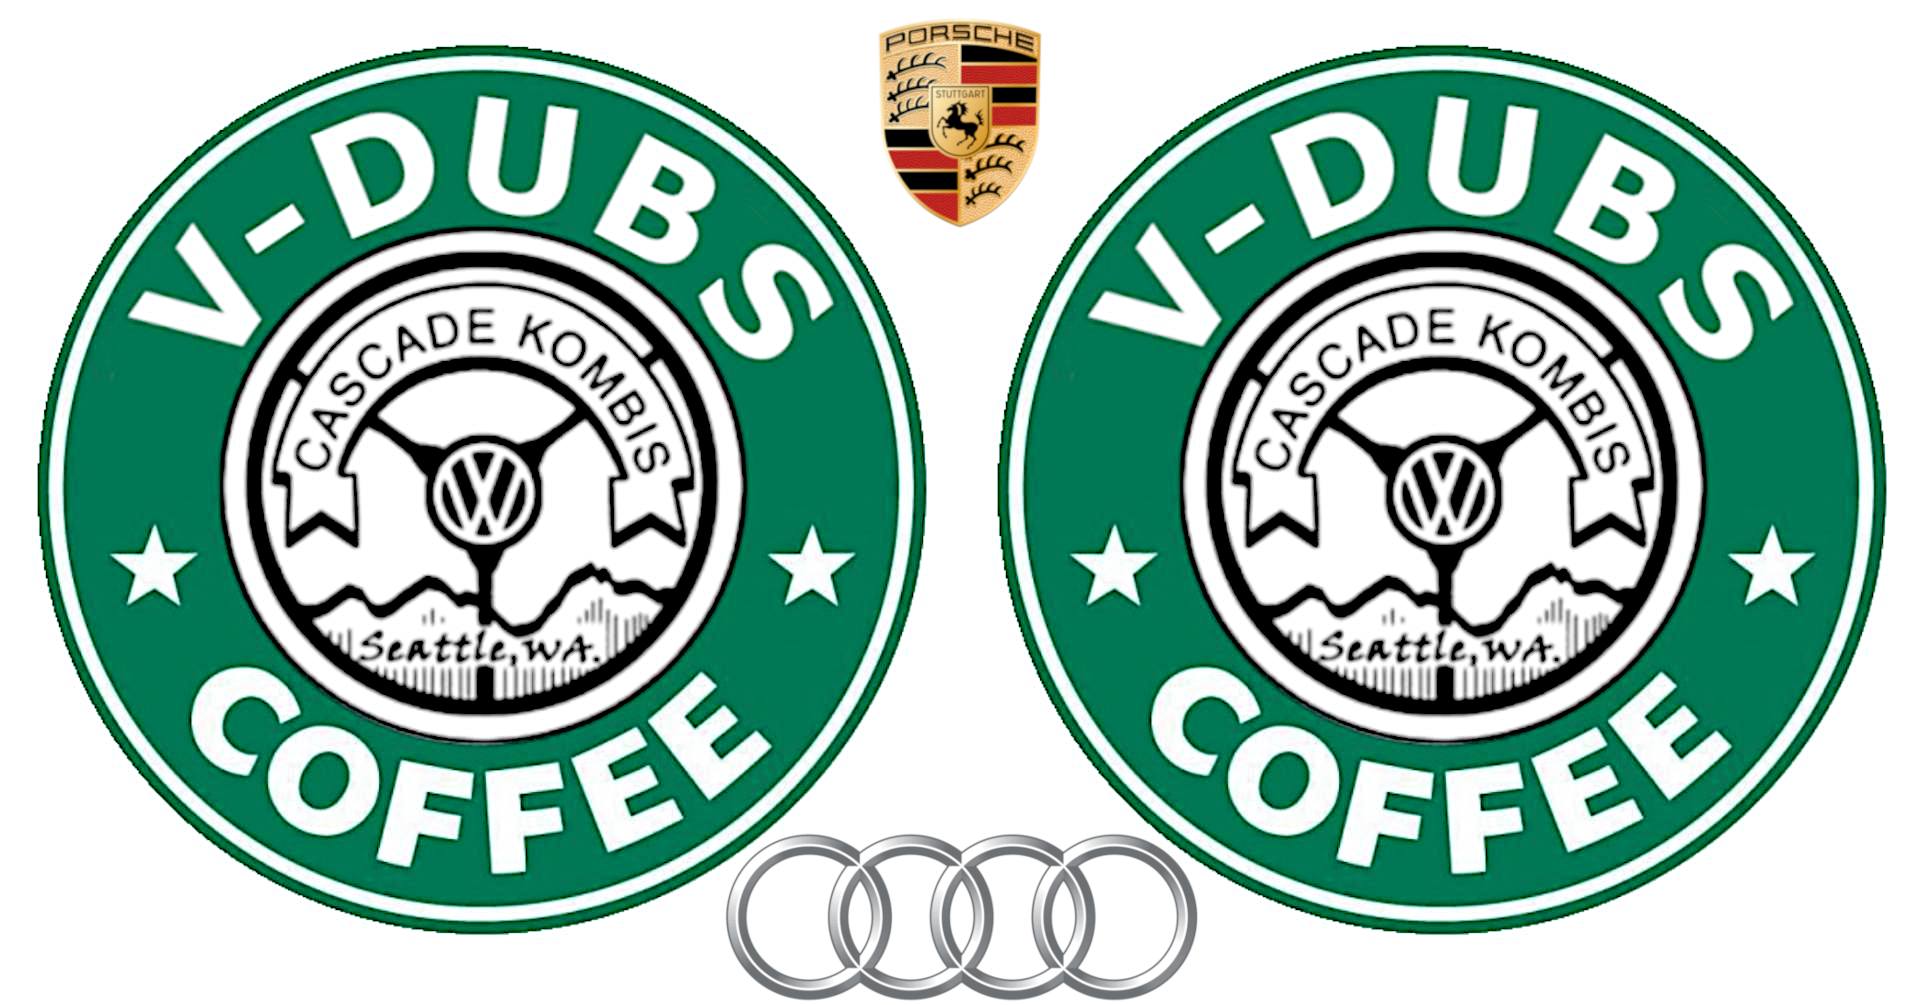 V-Dubs & Coffee